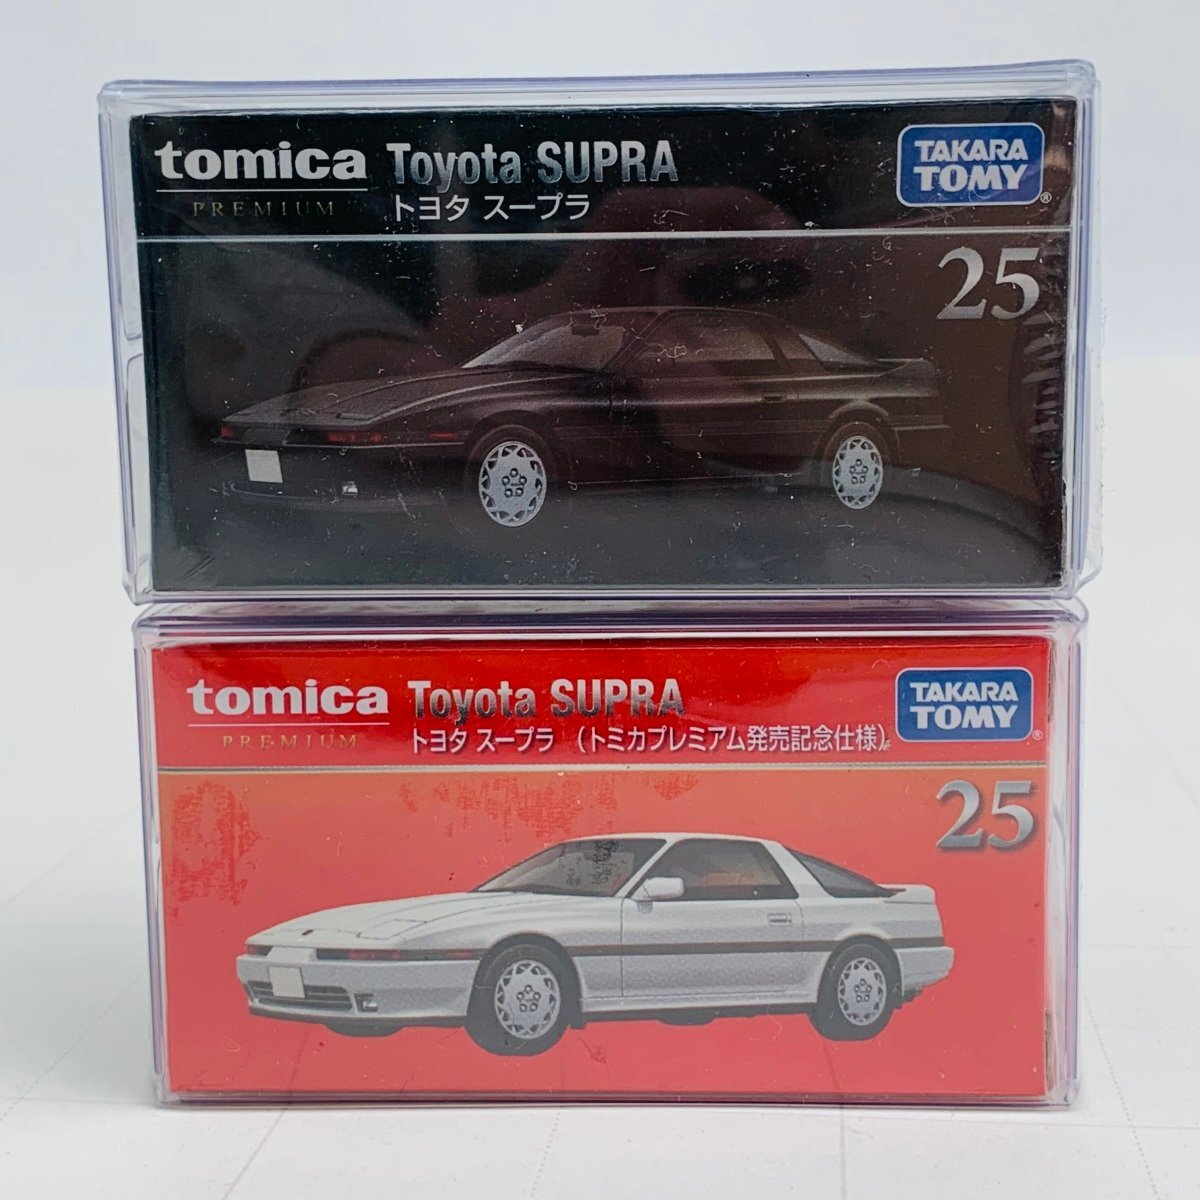 新品未開封 タカラトミー トミカ プレミアム 発売記念仕様 トヨタ スープラ 通常 2種 セットの画像1